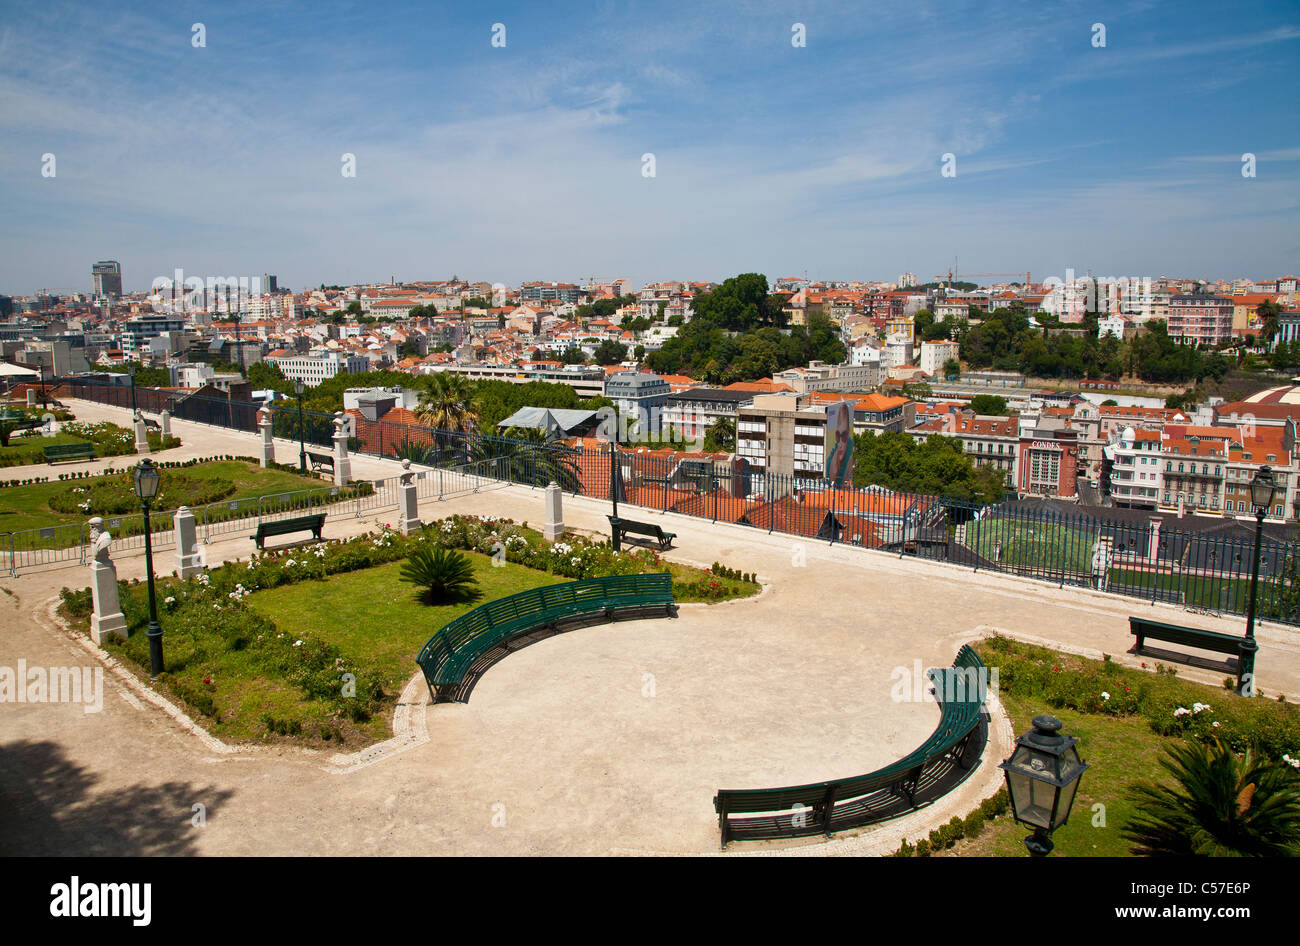 View from the Miradouro de Sao Pedro de Alcantara over Lisbon. Stock Photo